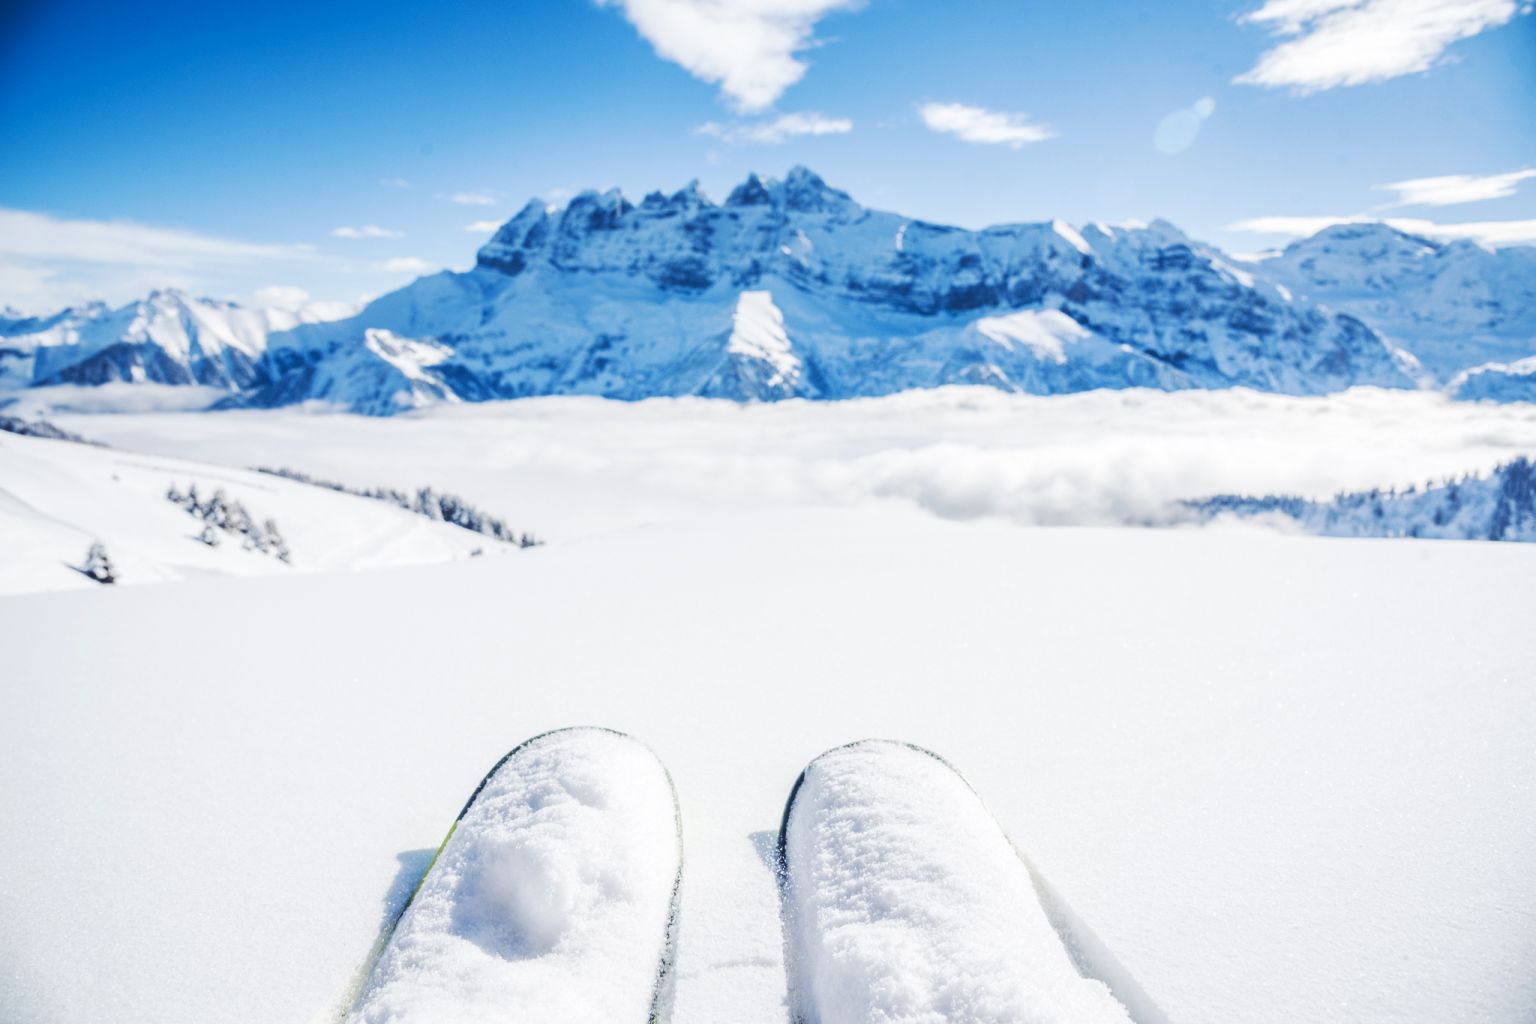 Skifahren mit den Dents du Midi im Hintergrund, Champéry, Portes du Soleil, Tiefschnee, Winter im Wallis, Schweiz